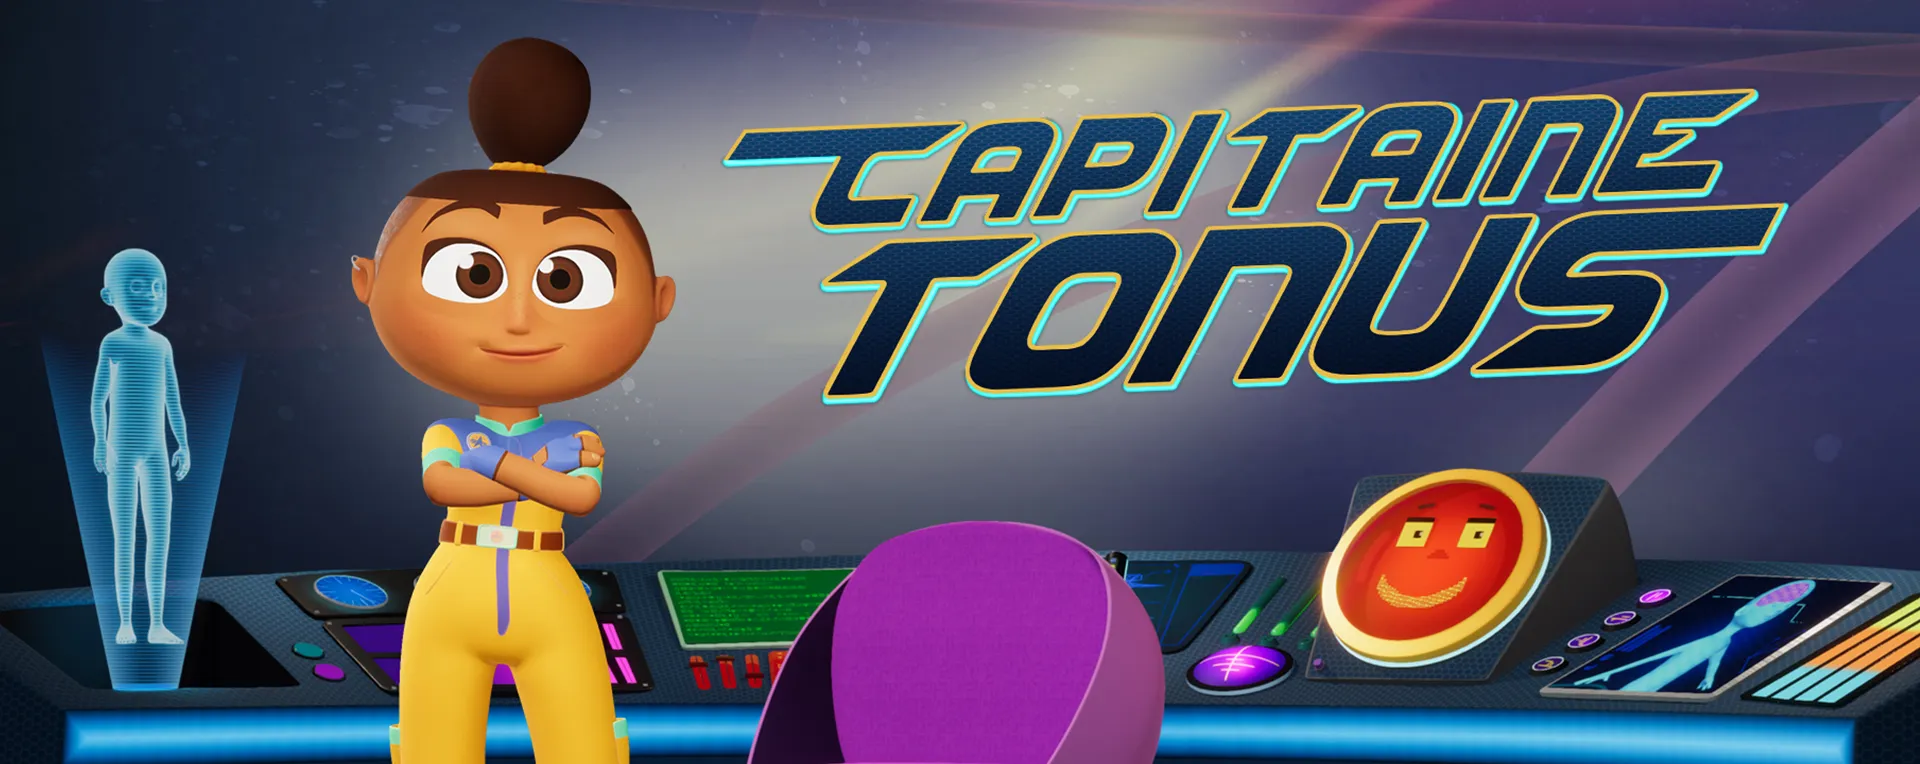 Lancement de Capitaine Tonus sur Disney Channel France